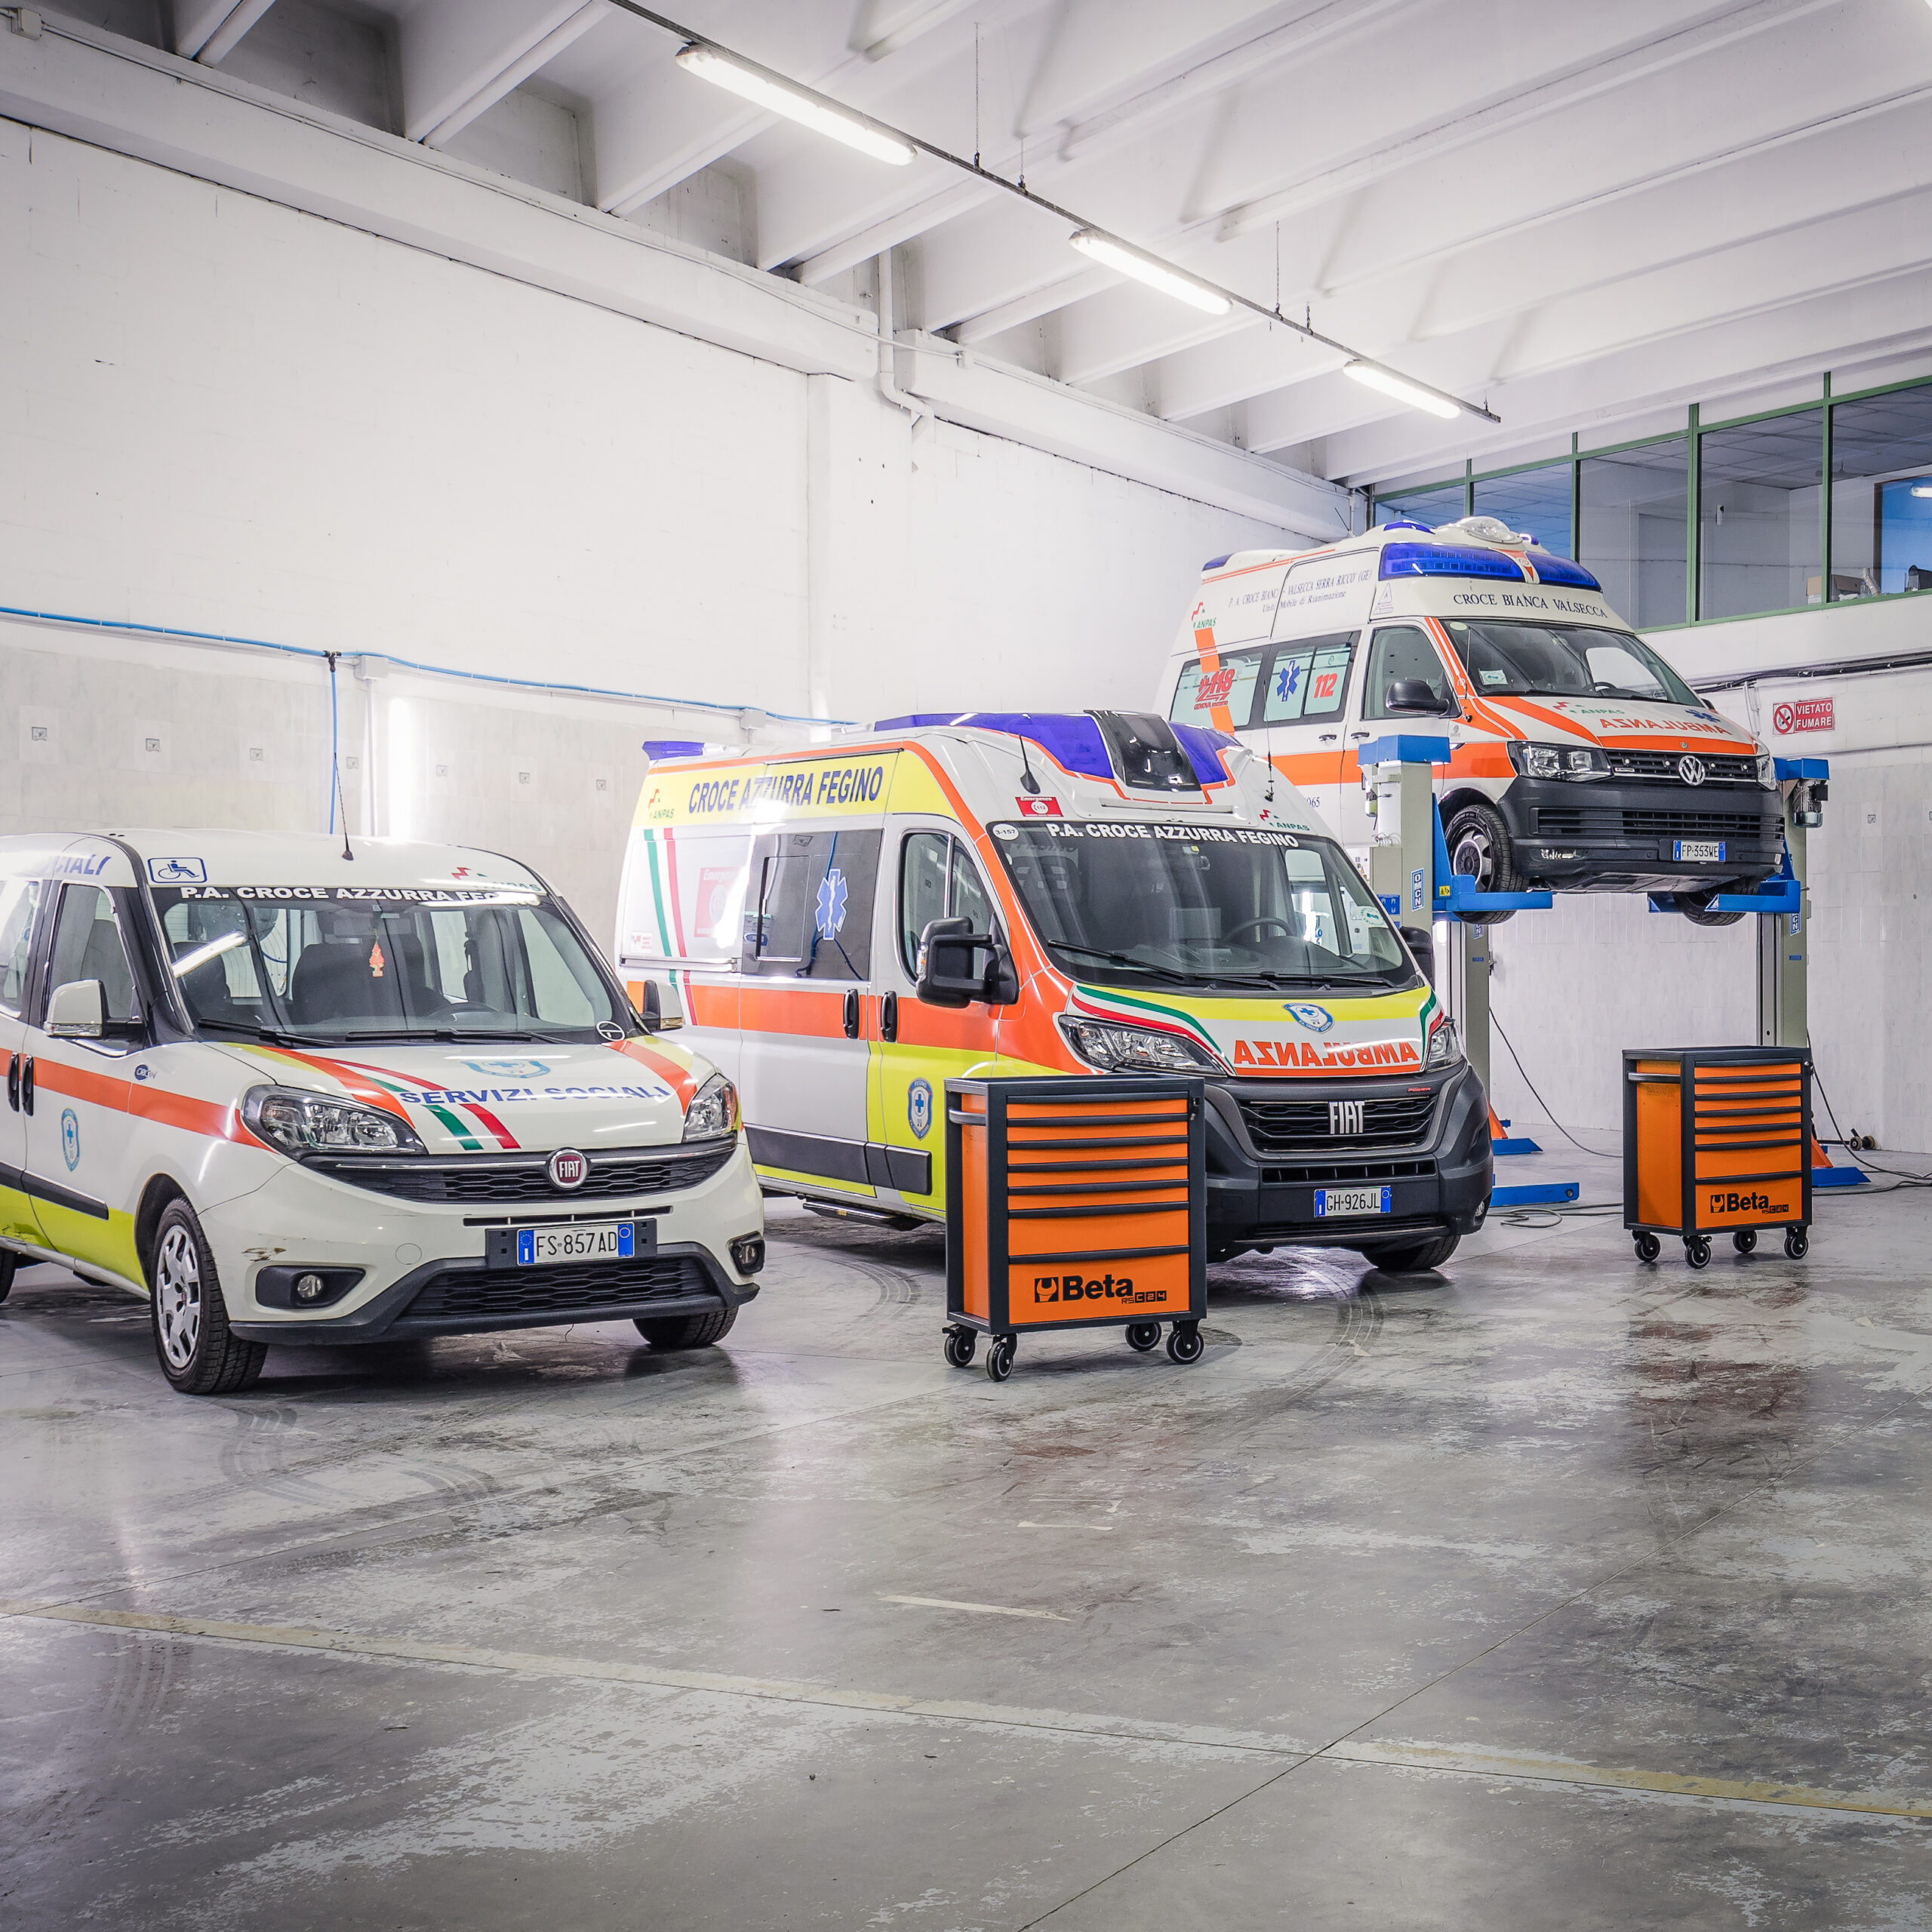 Magazzino con ambulanze in manutenzione